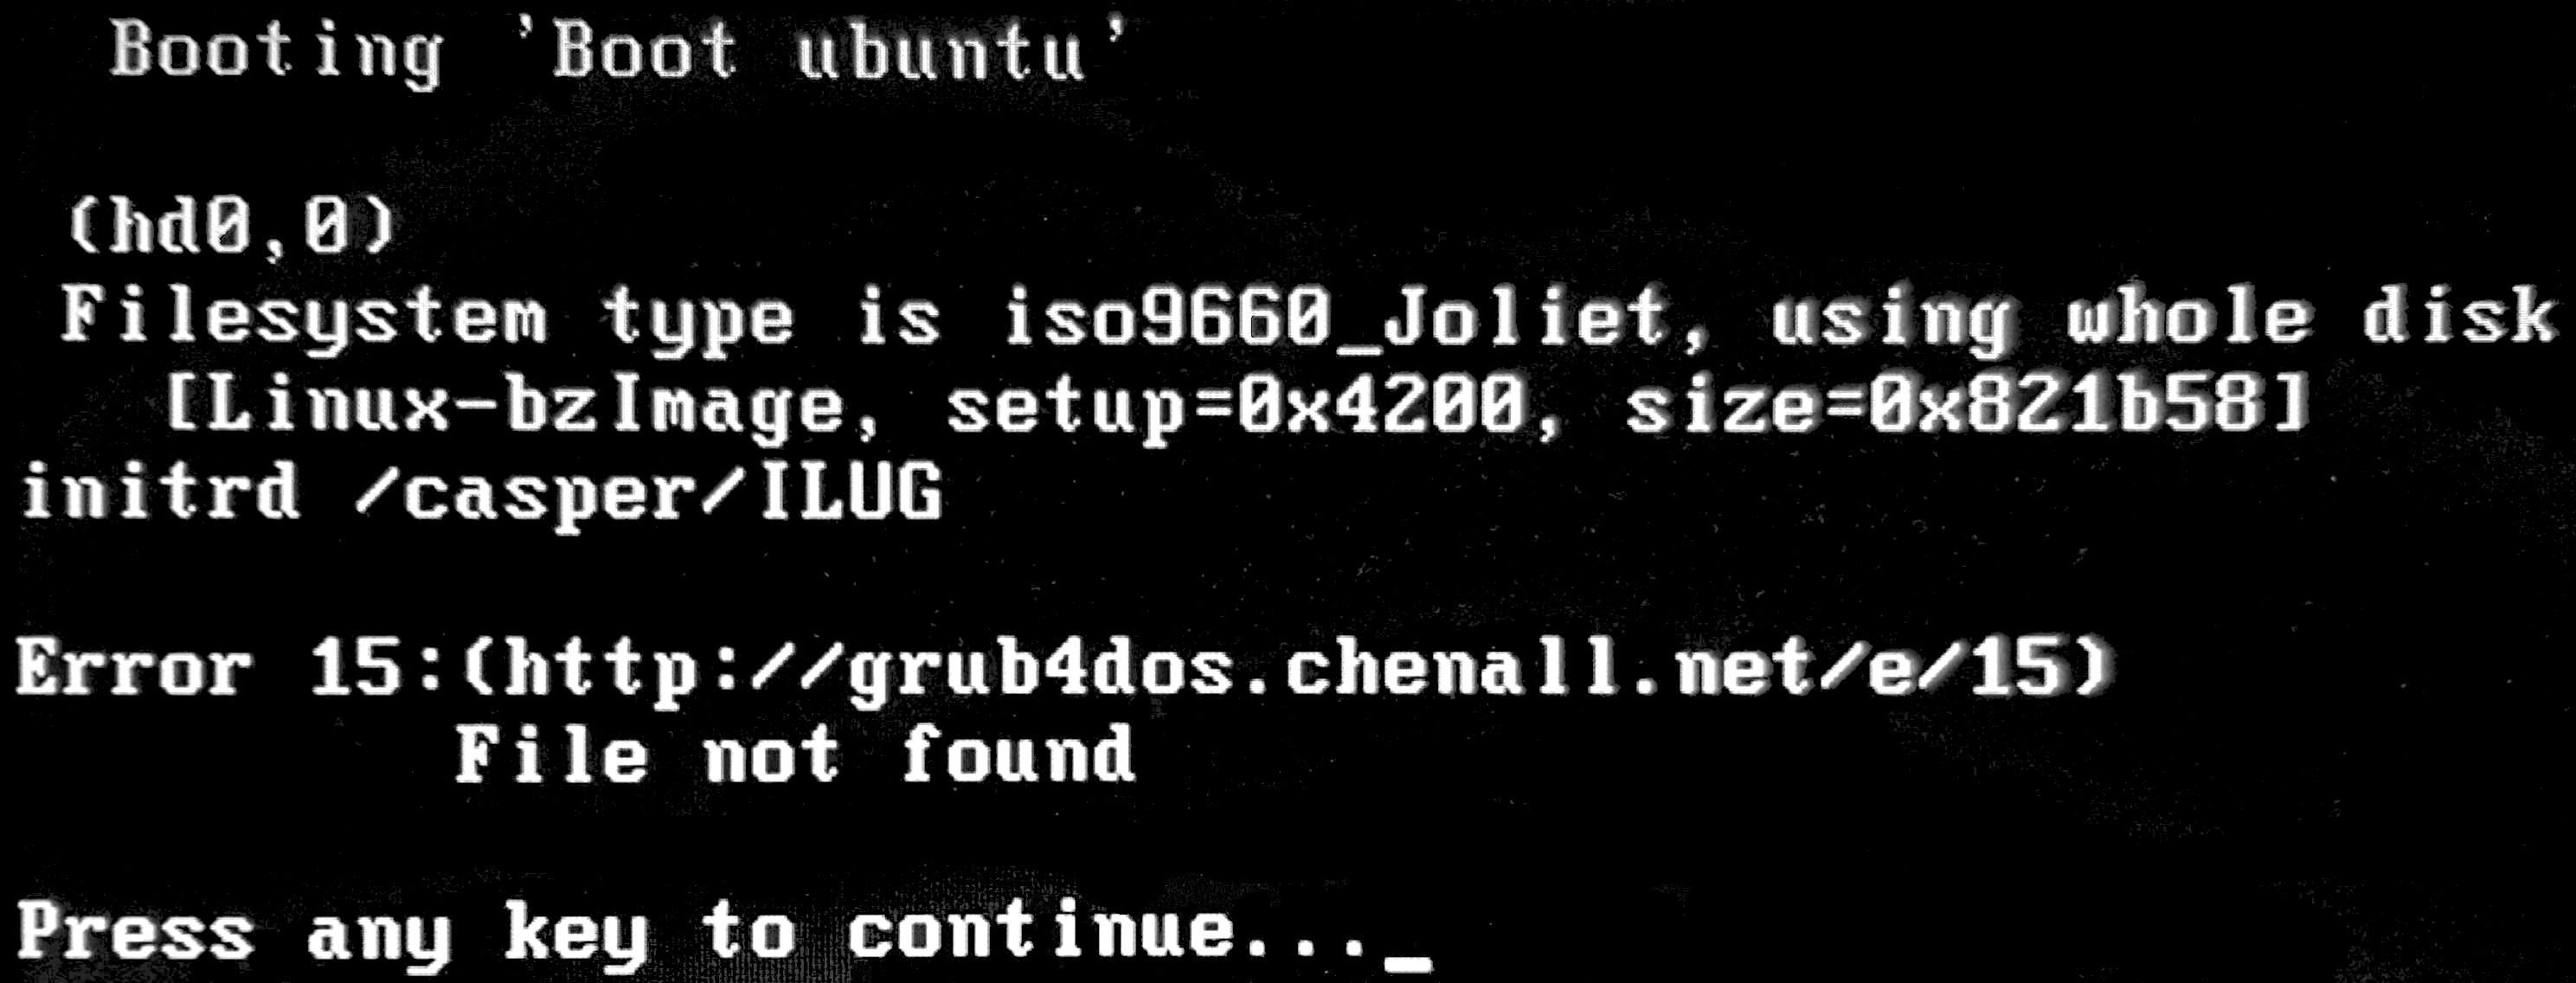 grub 15 error linux